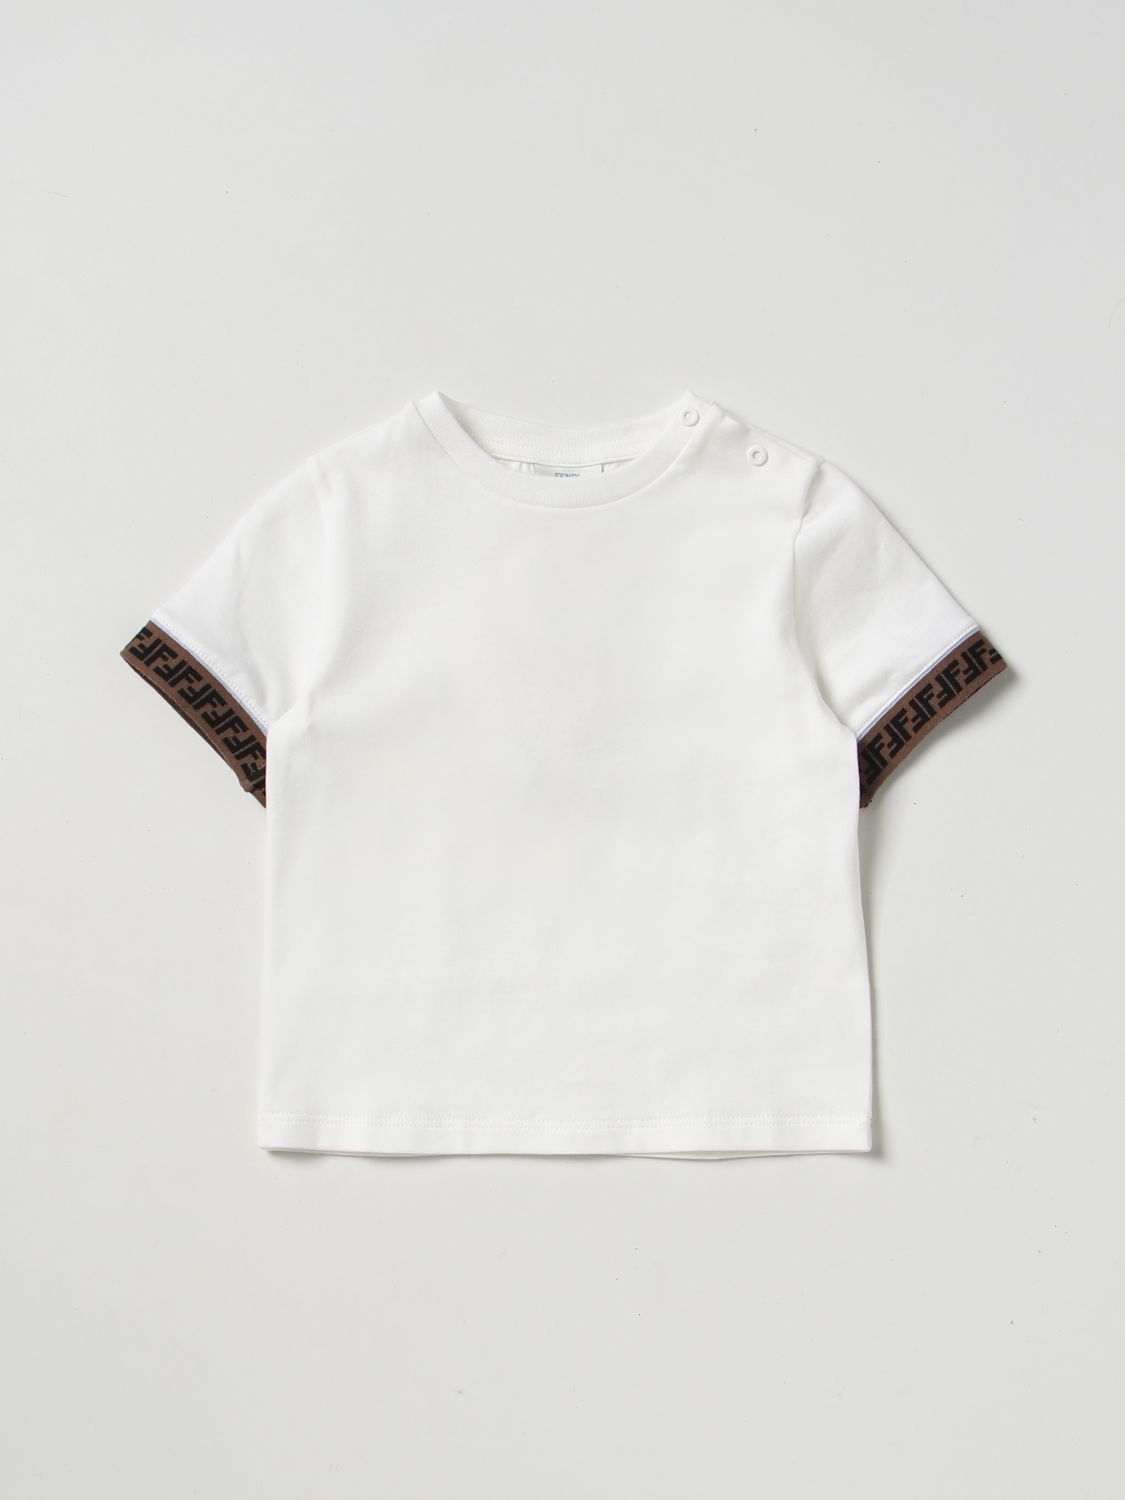 FENDI KIDS: t-shirt for baby - White | Fendi Kids t-shirt BMI216ST8 ...